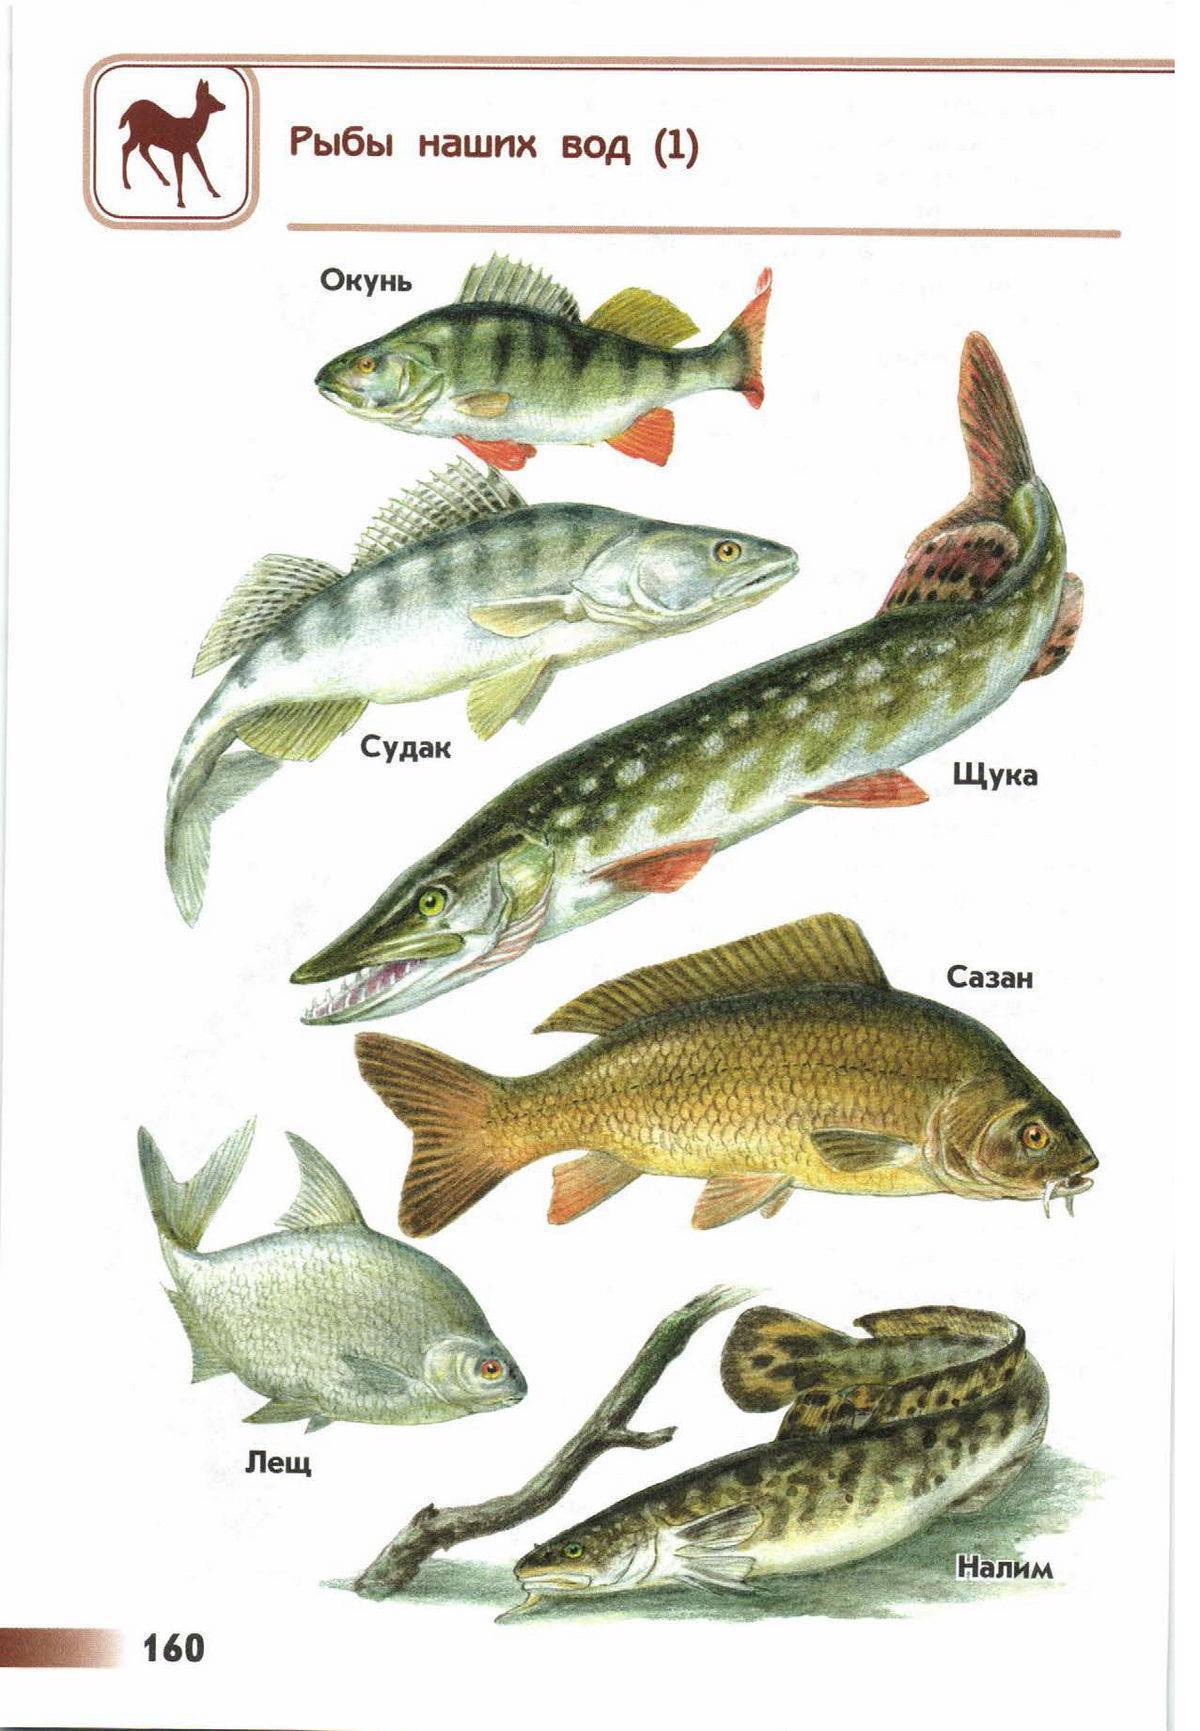 Судак – морская или речная рыба, нерест, где обитает и ловится хищник